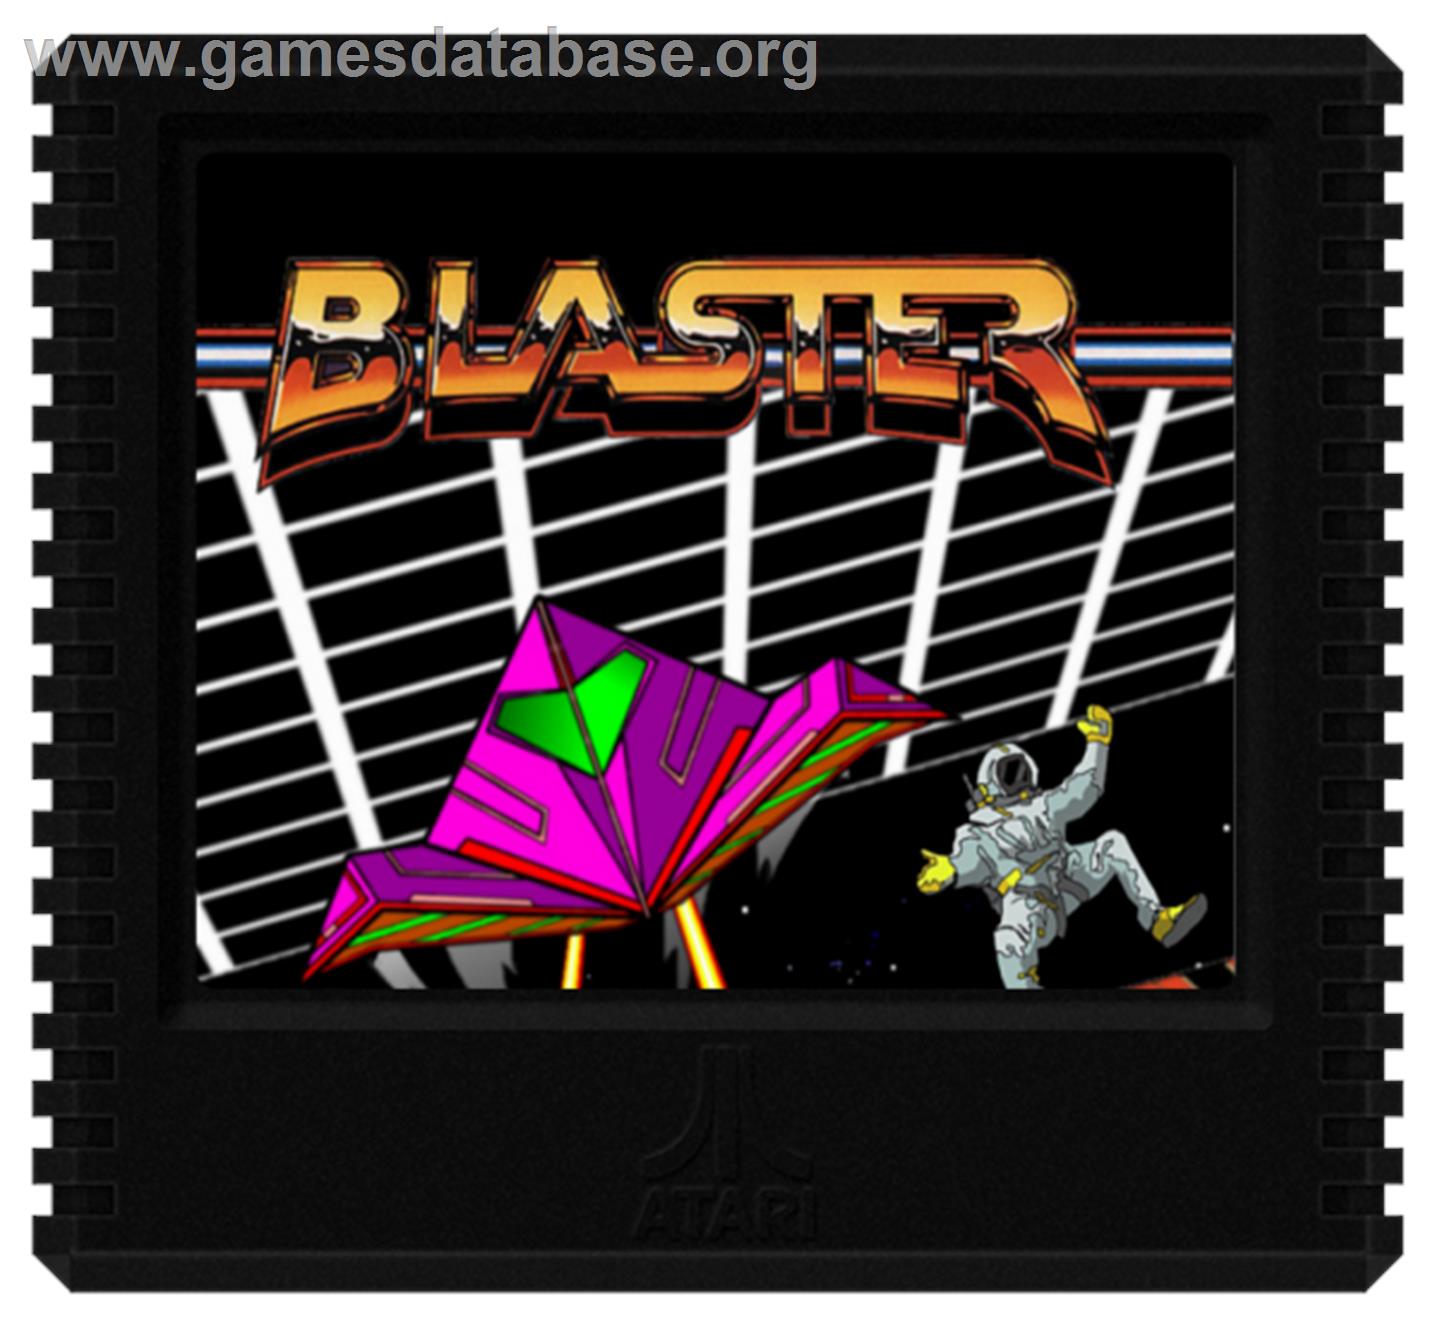 Bristles - Atari 5200 - Artwork - Cartridge